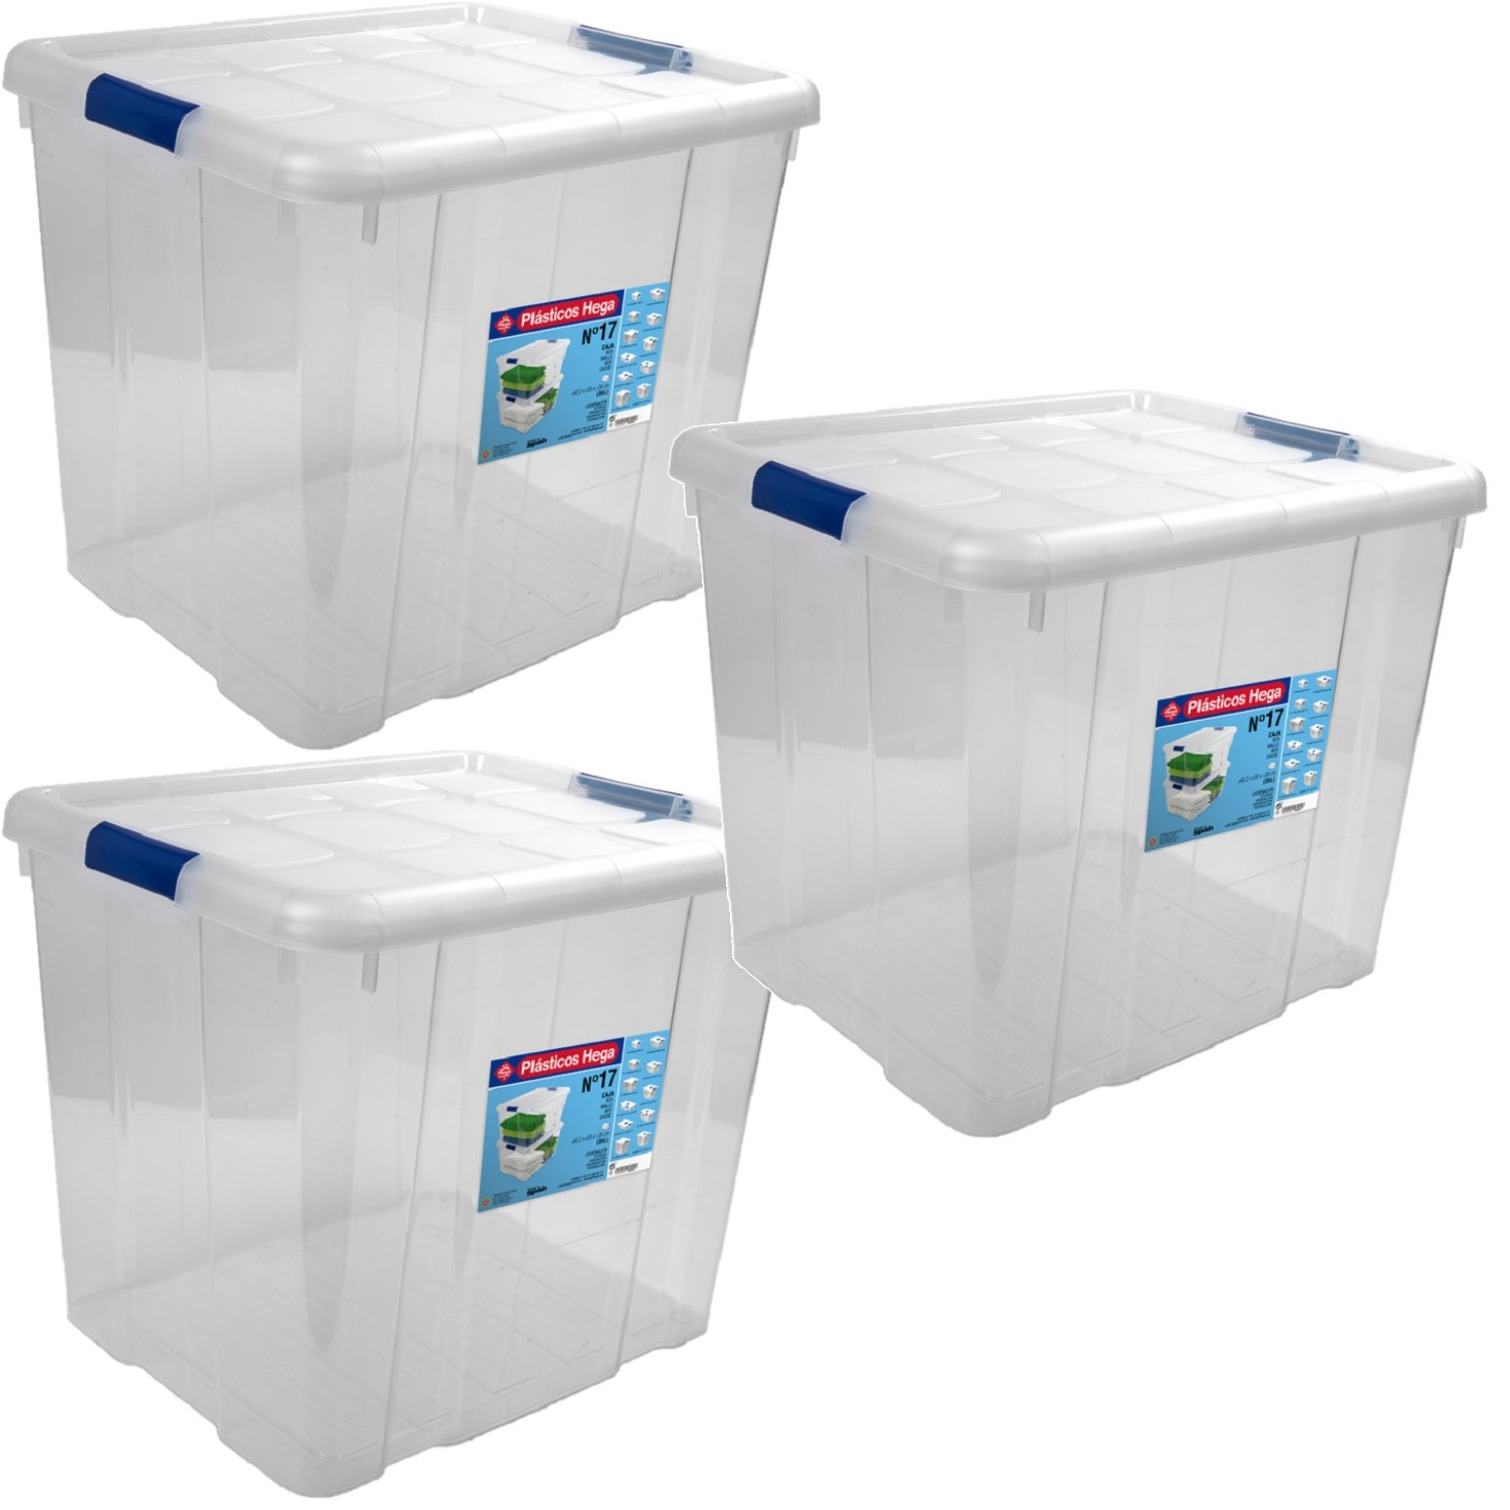 5x Opbergboxen-opbergdozen met deksel 35 liter kunststof transparant-blauw